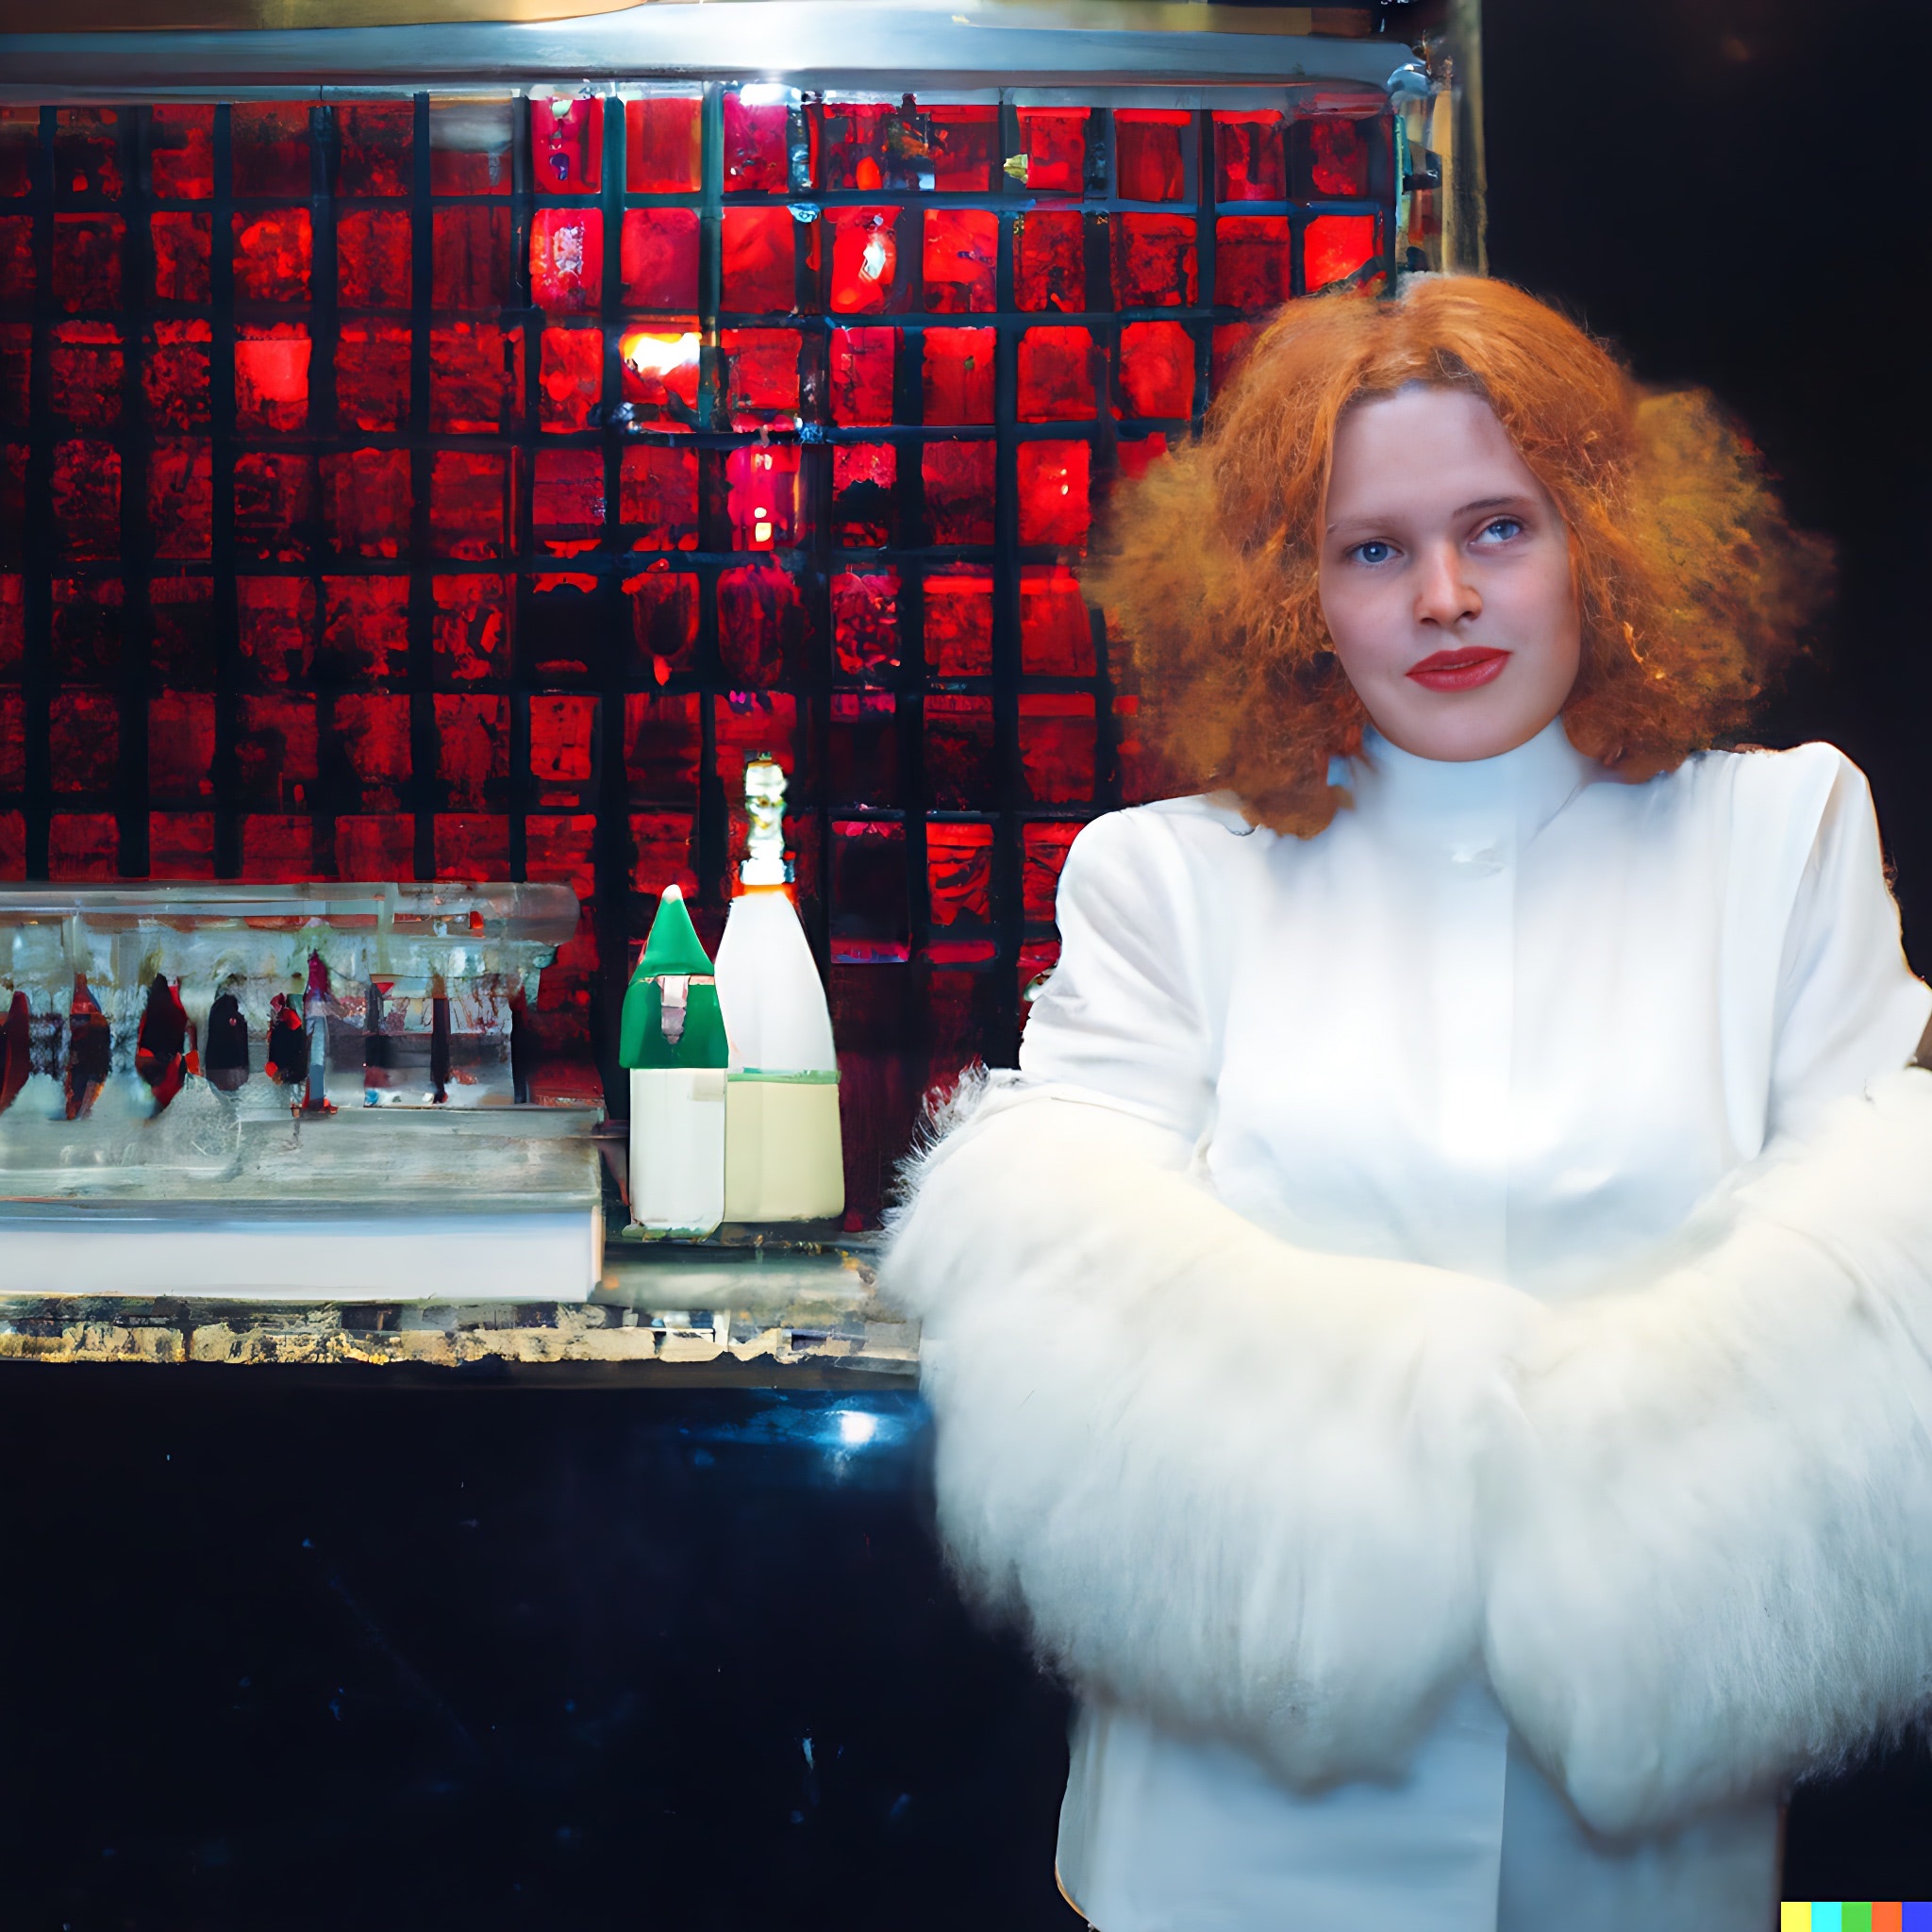 white-fur-coat-bartender-3